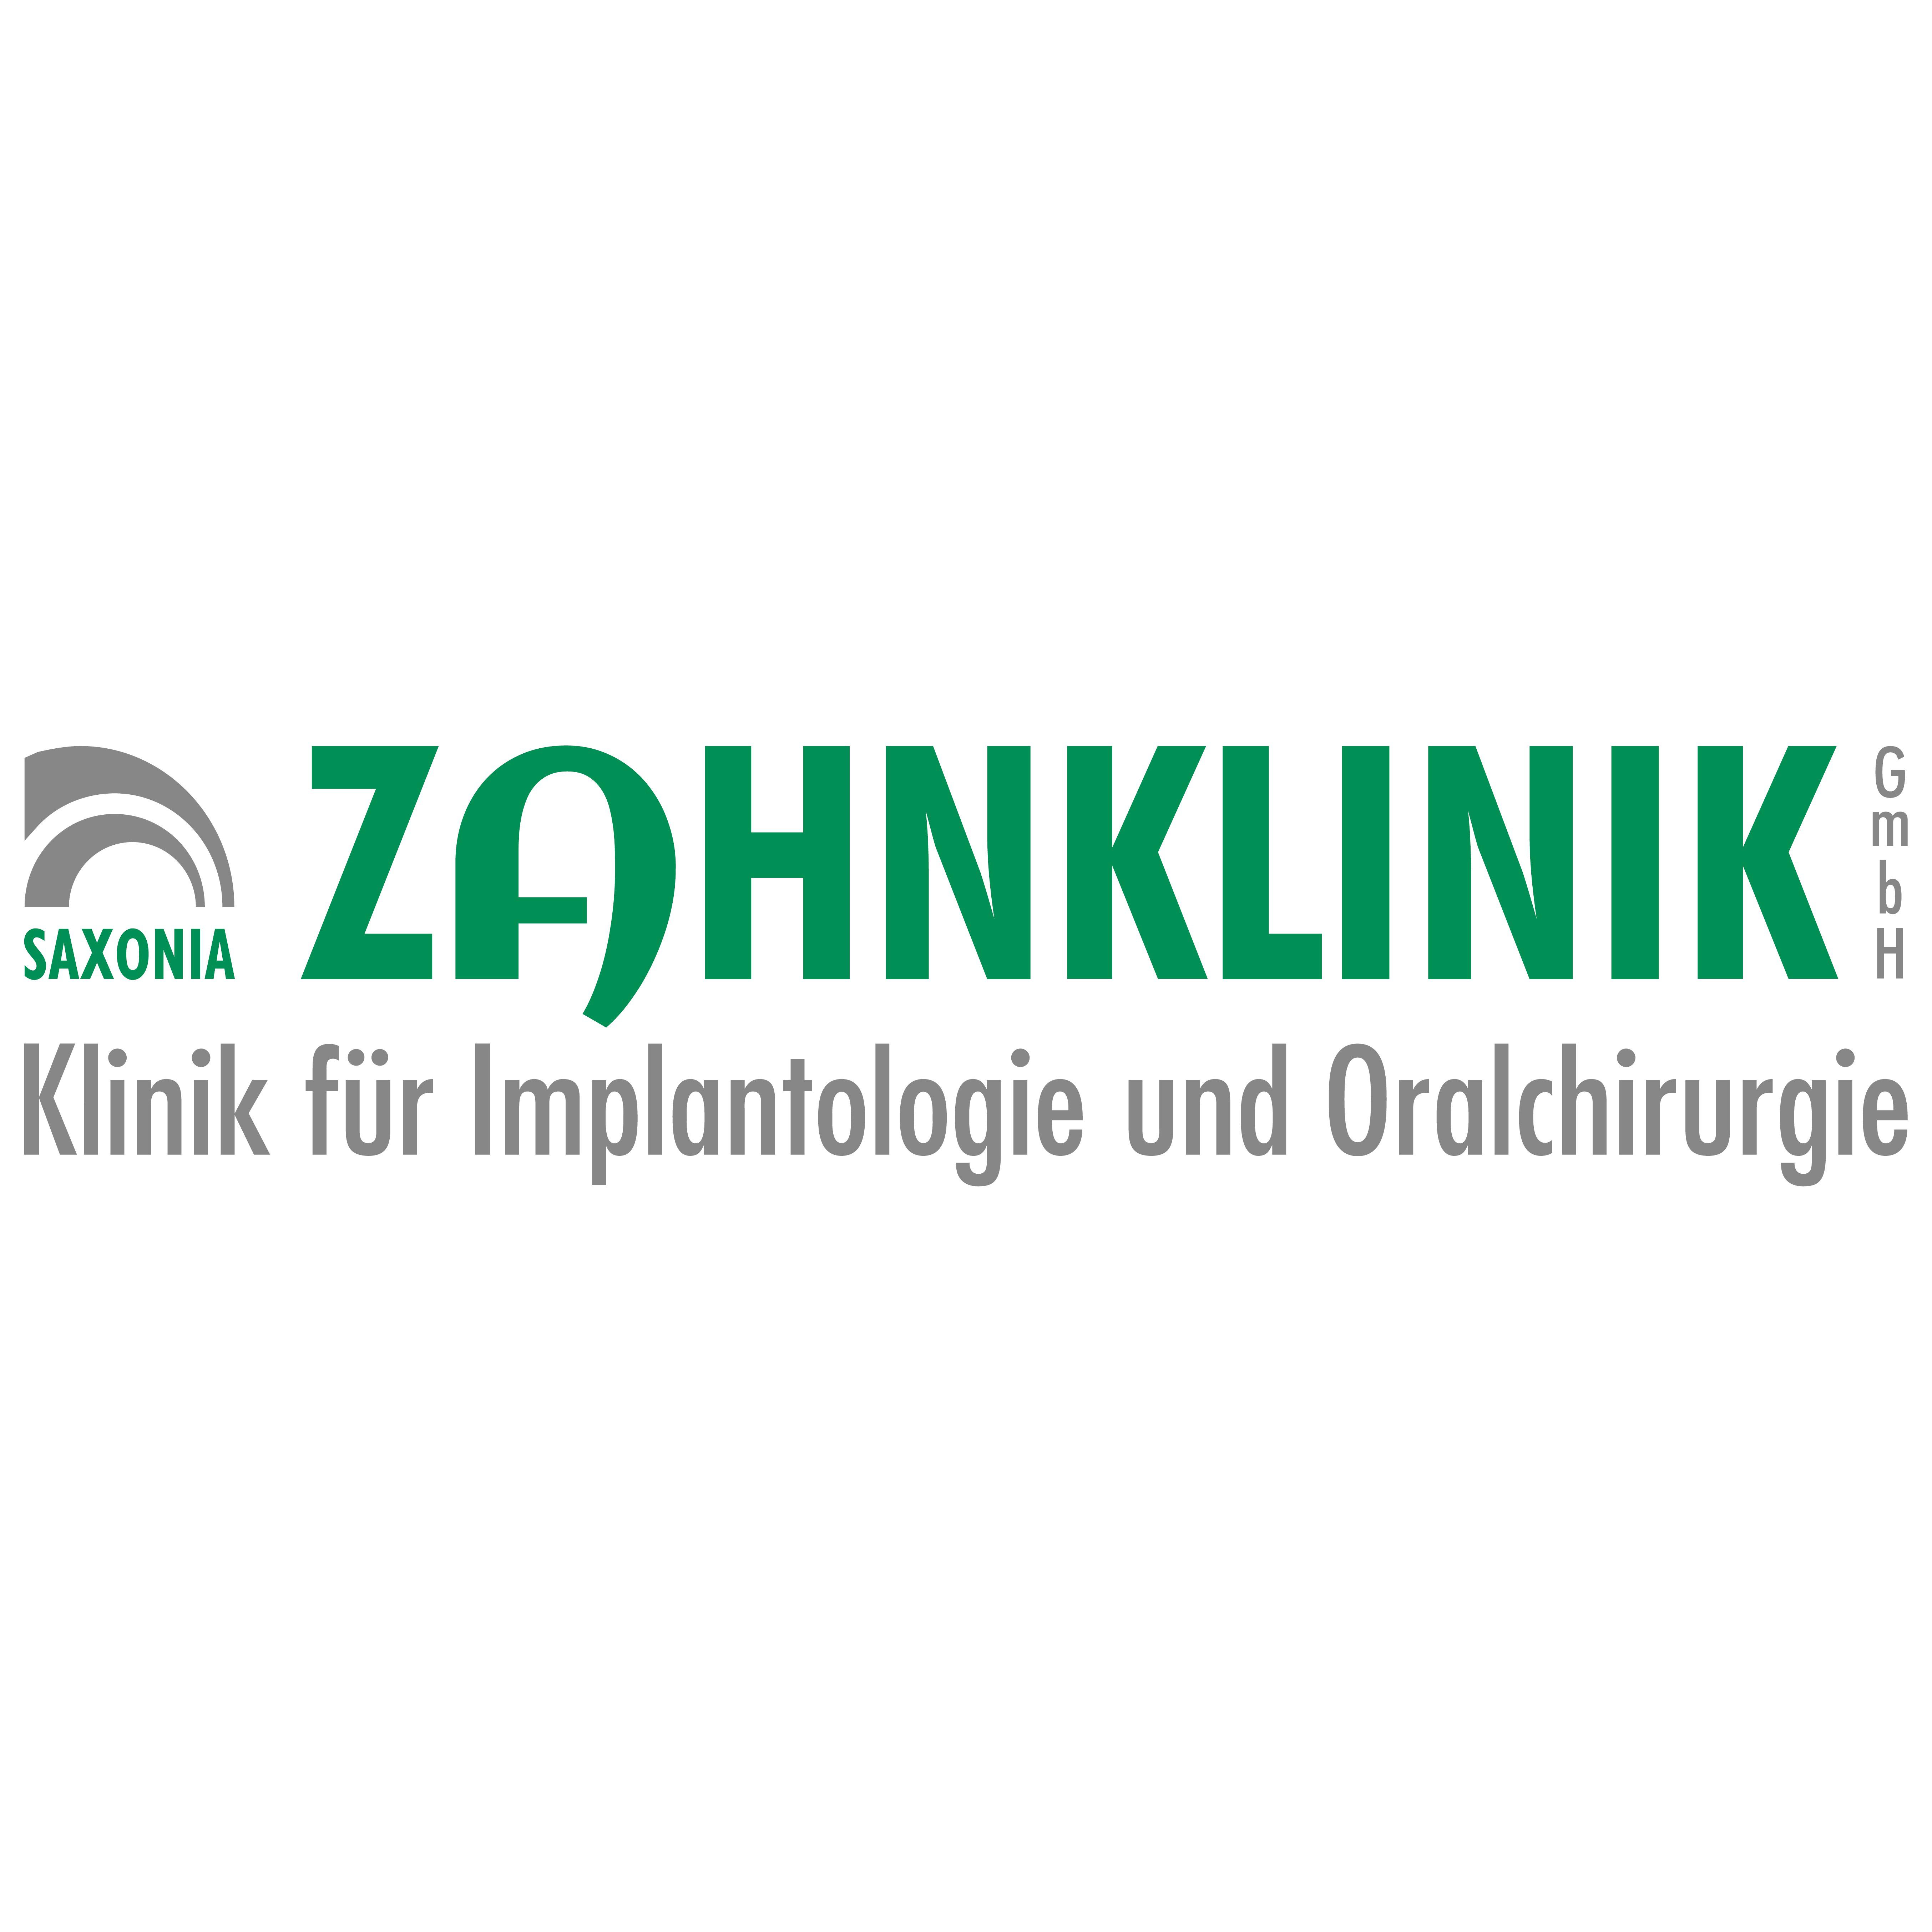 Saxonia-Zahnklinik GmbH Klinik für Implantologie und Oralchirurgie  